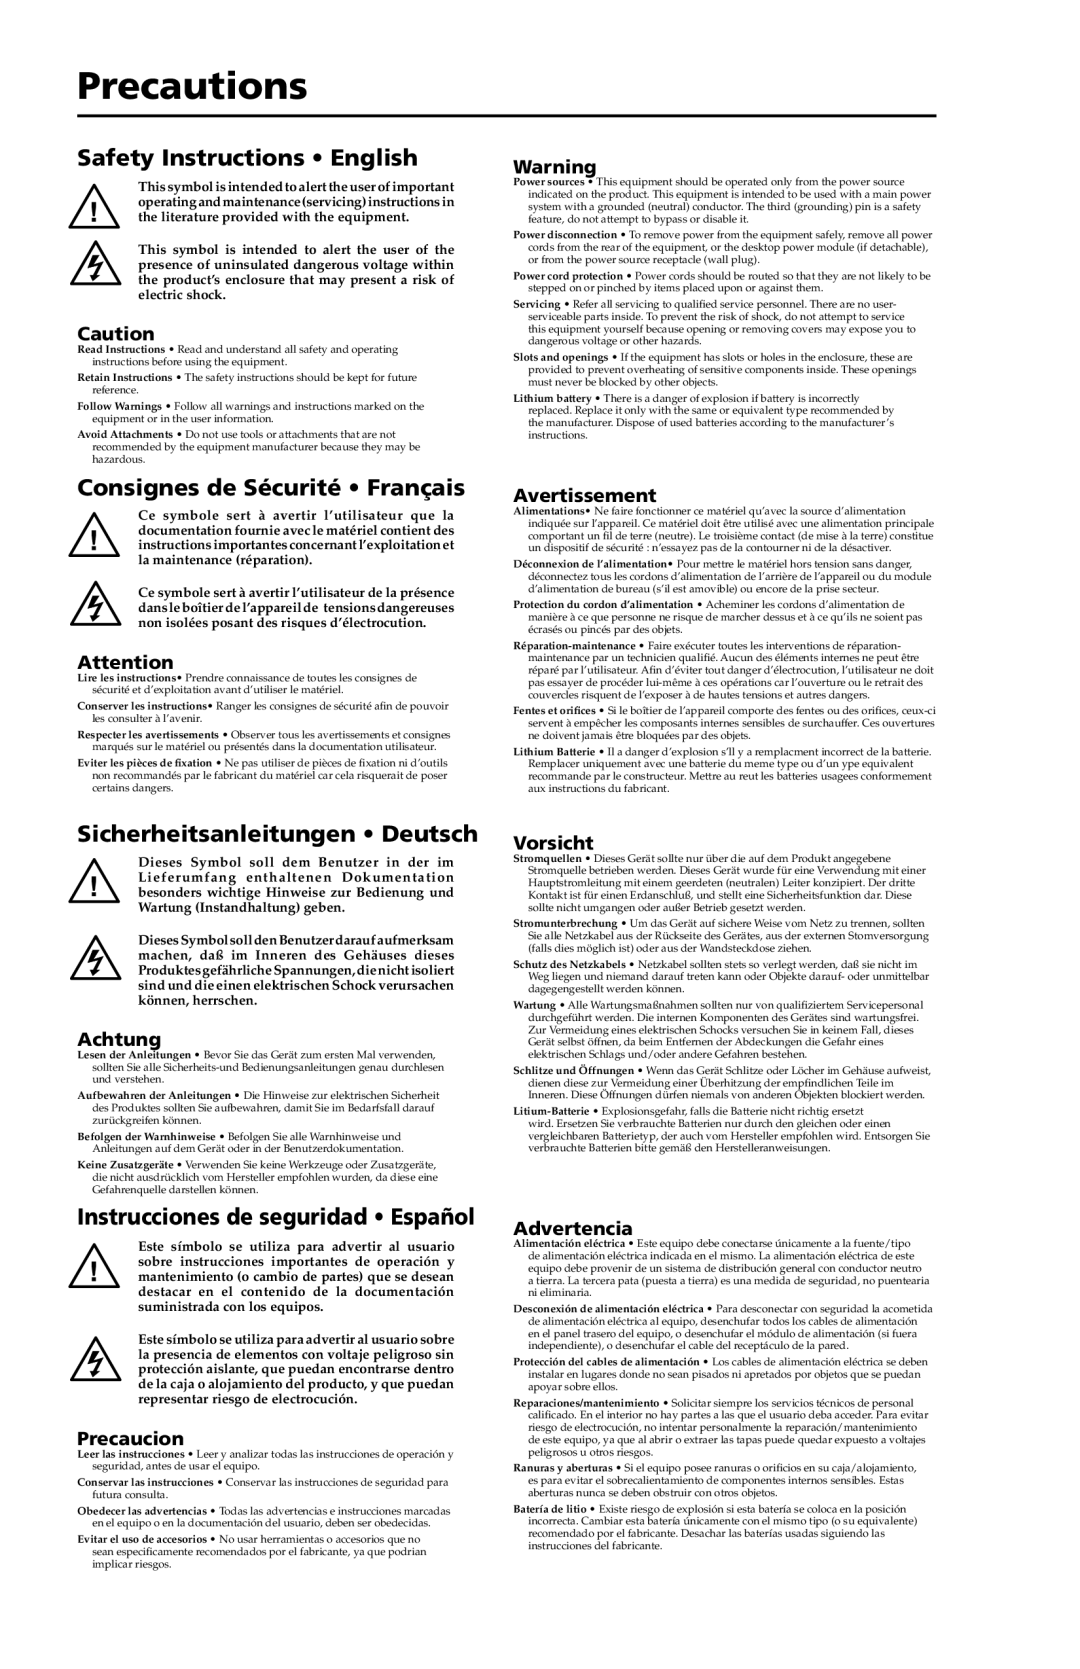 Extron electronic TP T 15HD 45 Precautions, Safety Instructions English, Consignes de Sécurité Français, Avertissement 